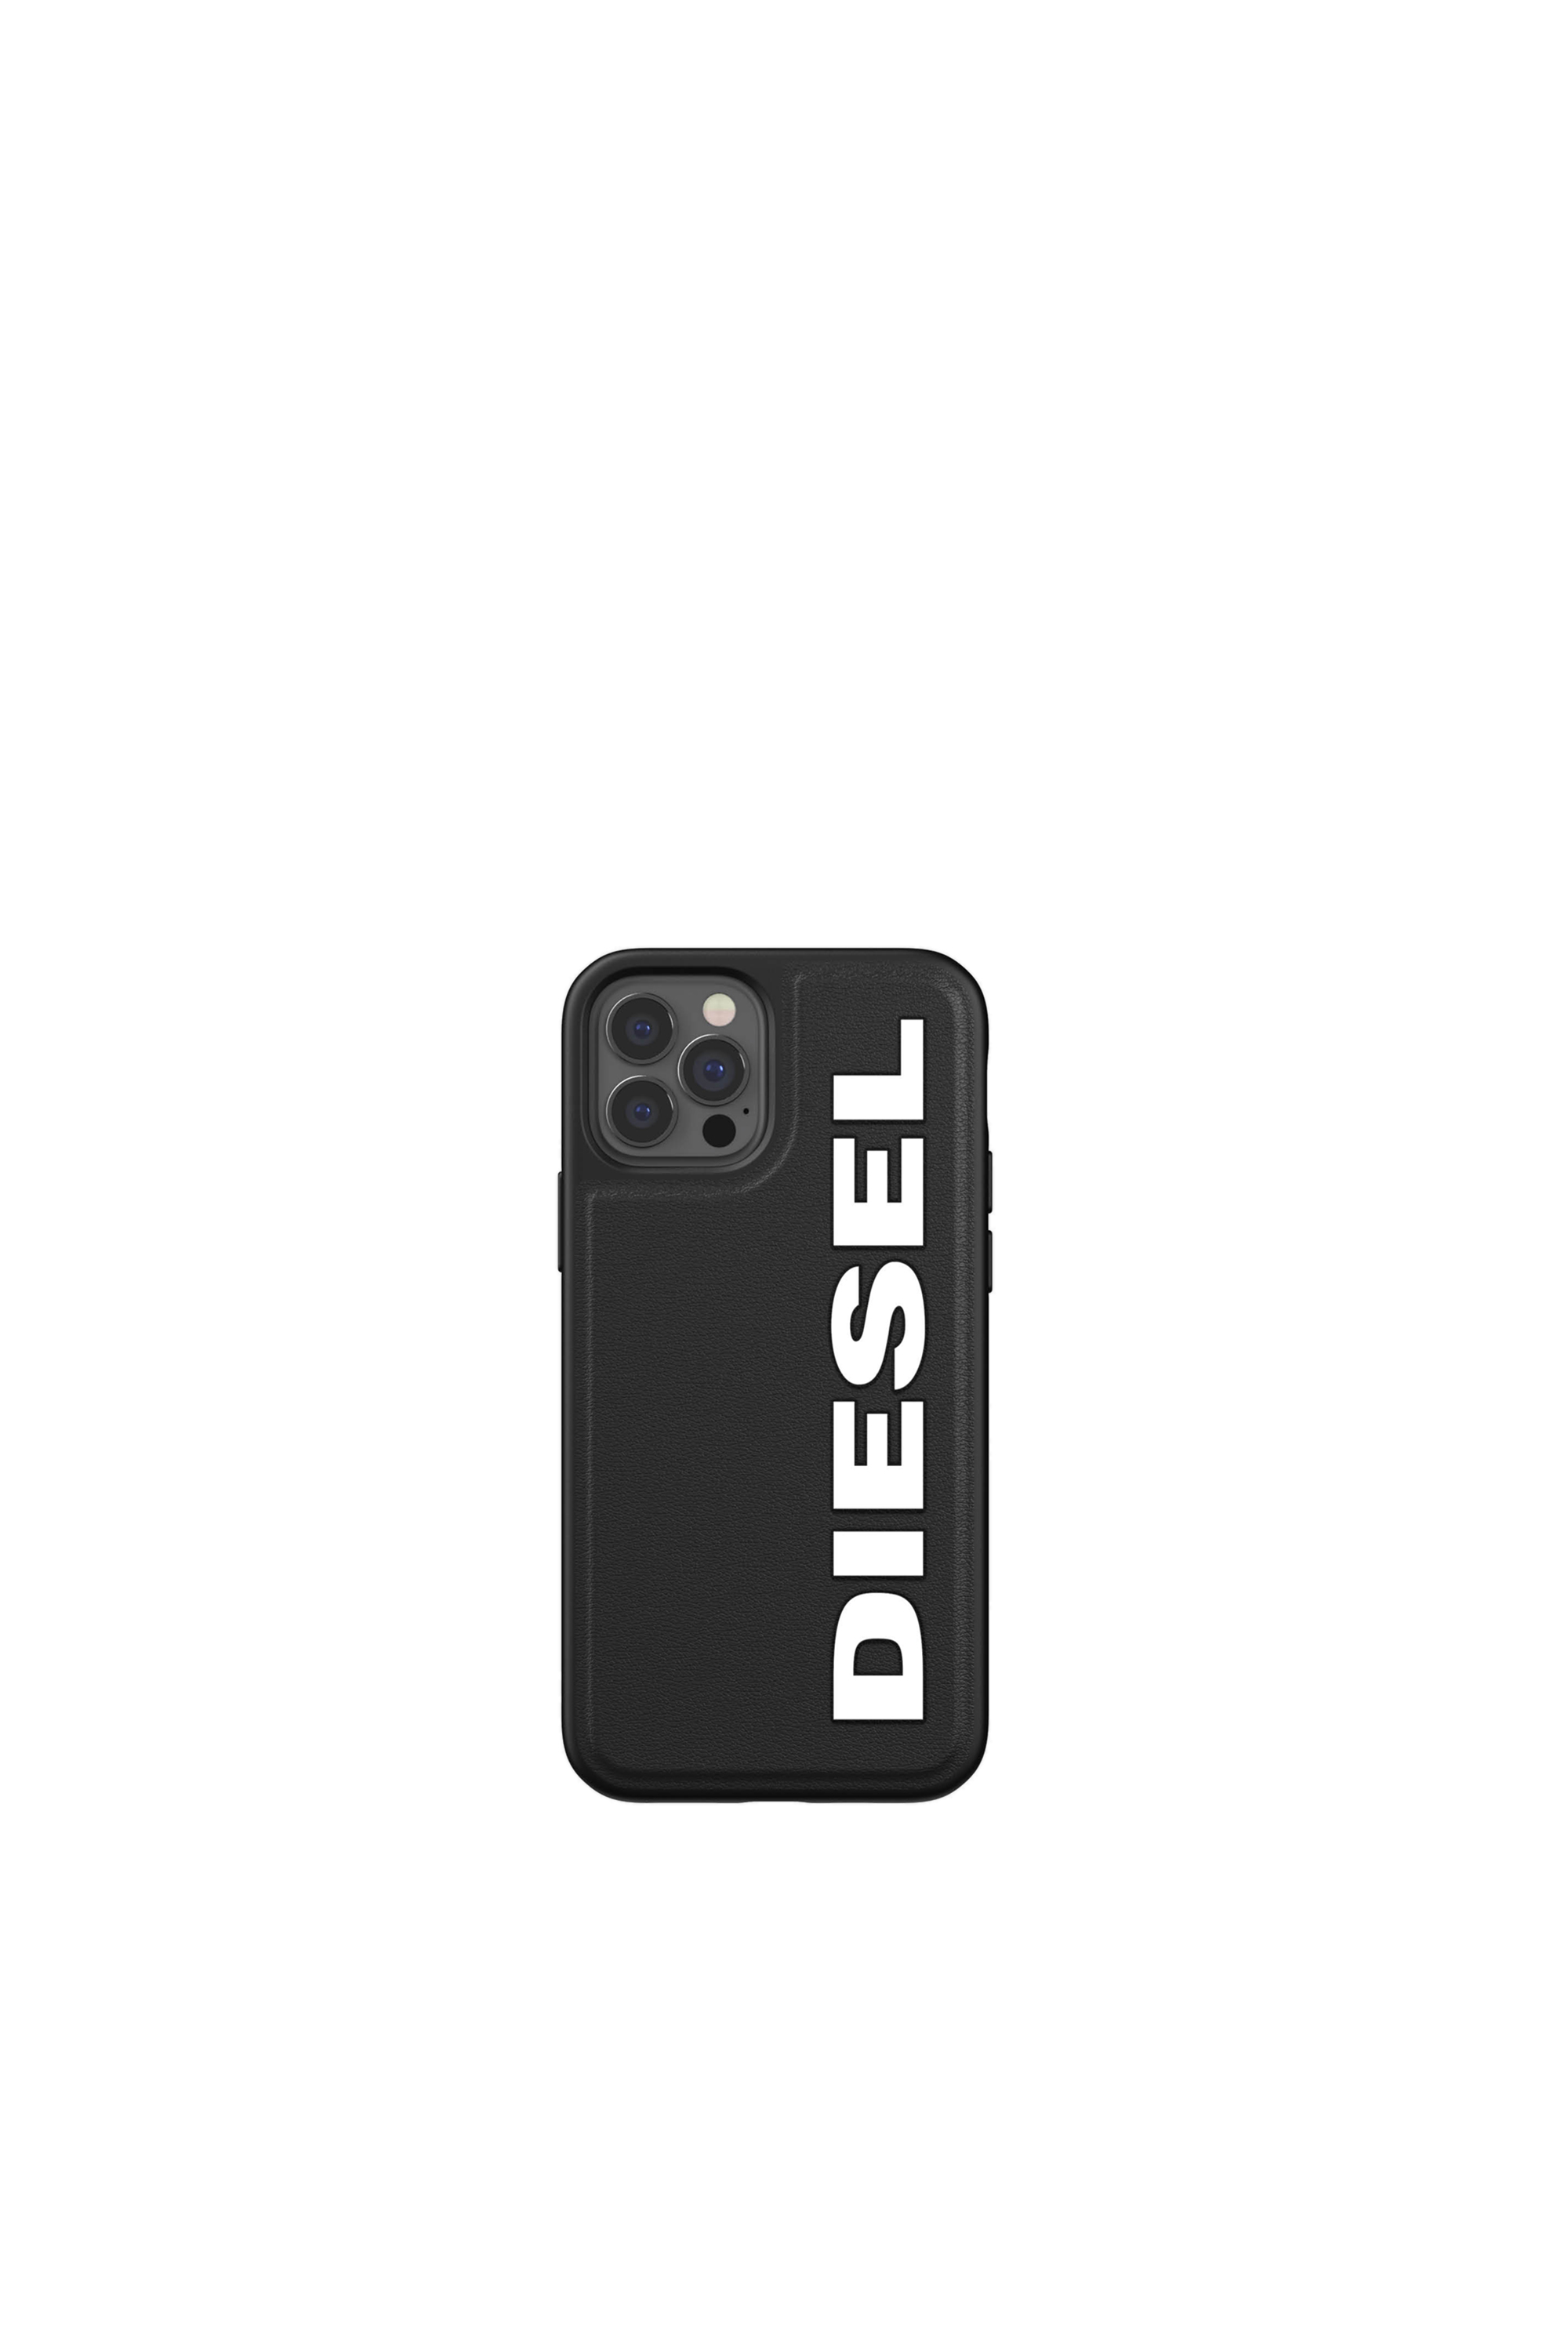 Diesel - 42492, Black - Image 2